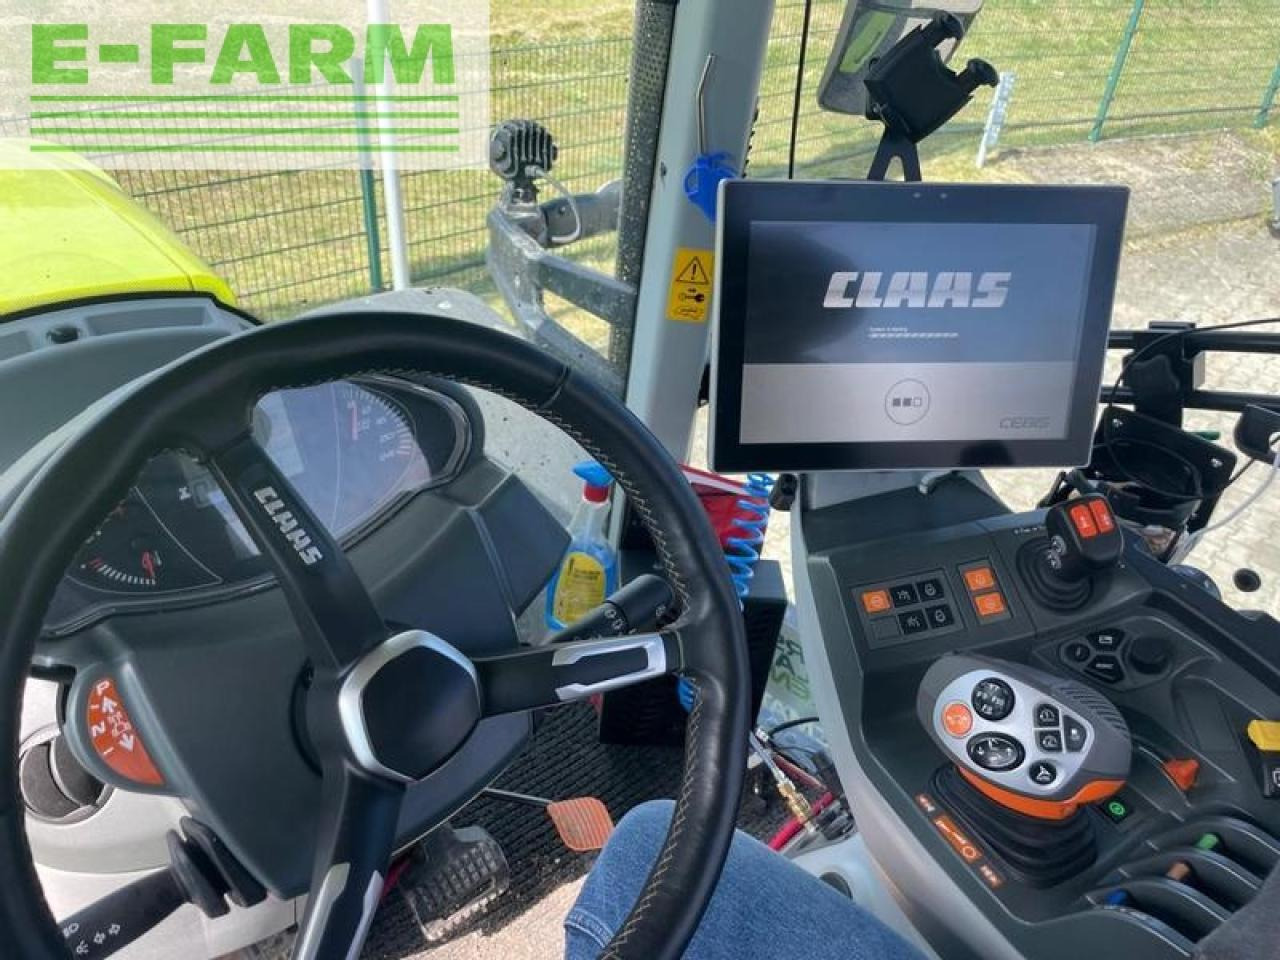 Farm tractor CLAAS axion 810 cmatic